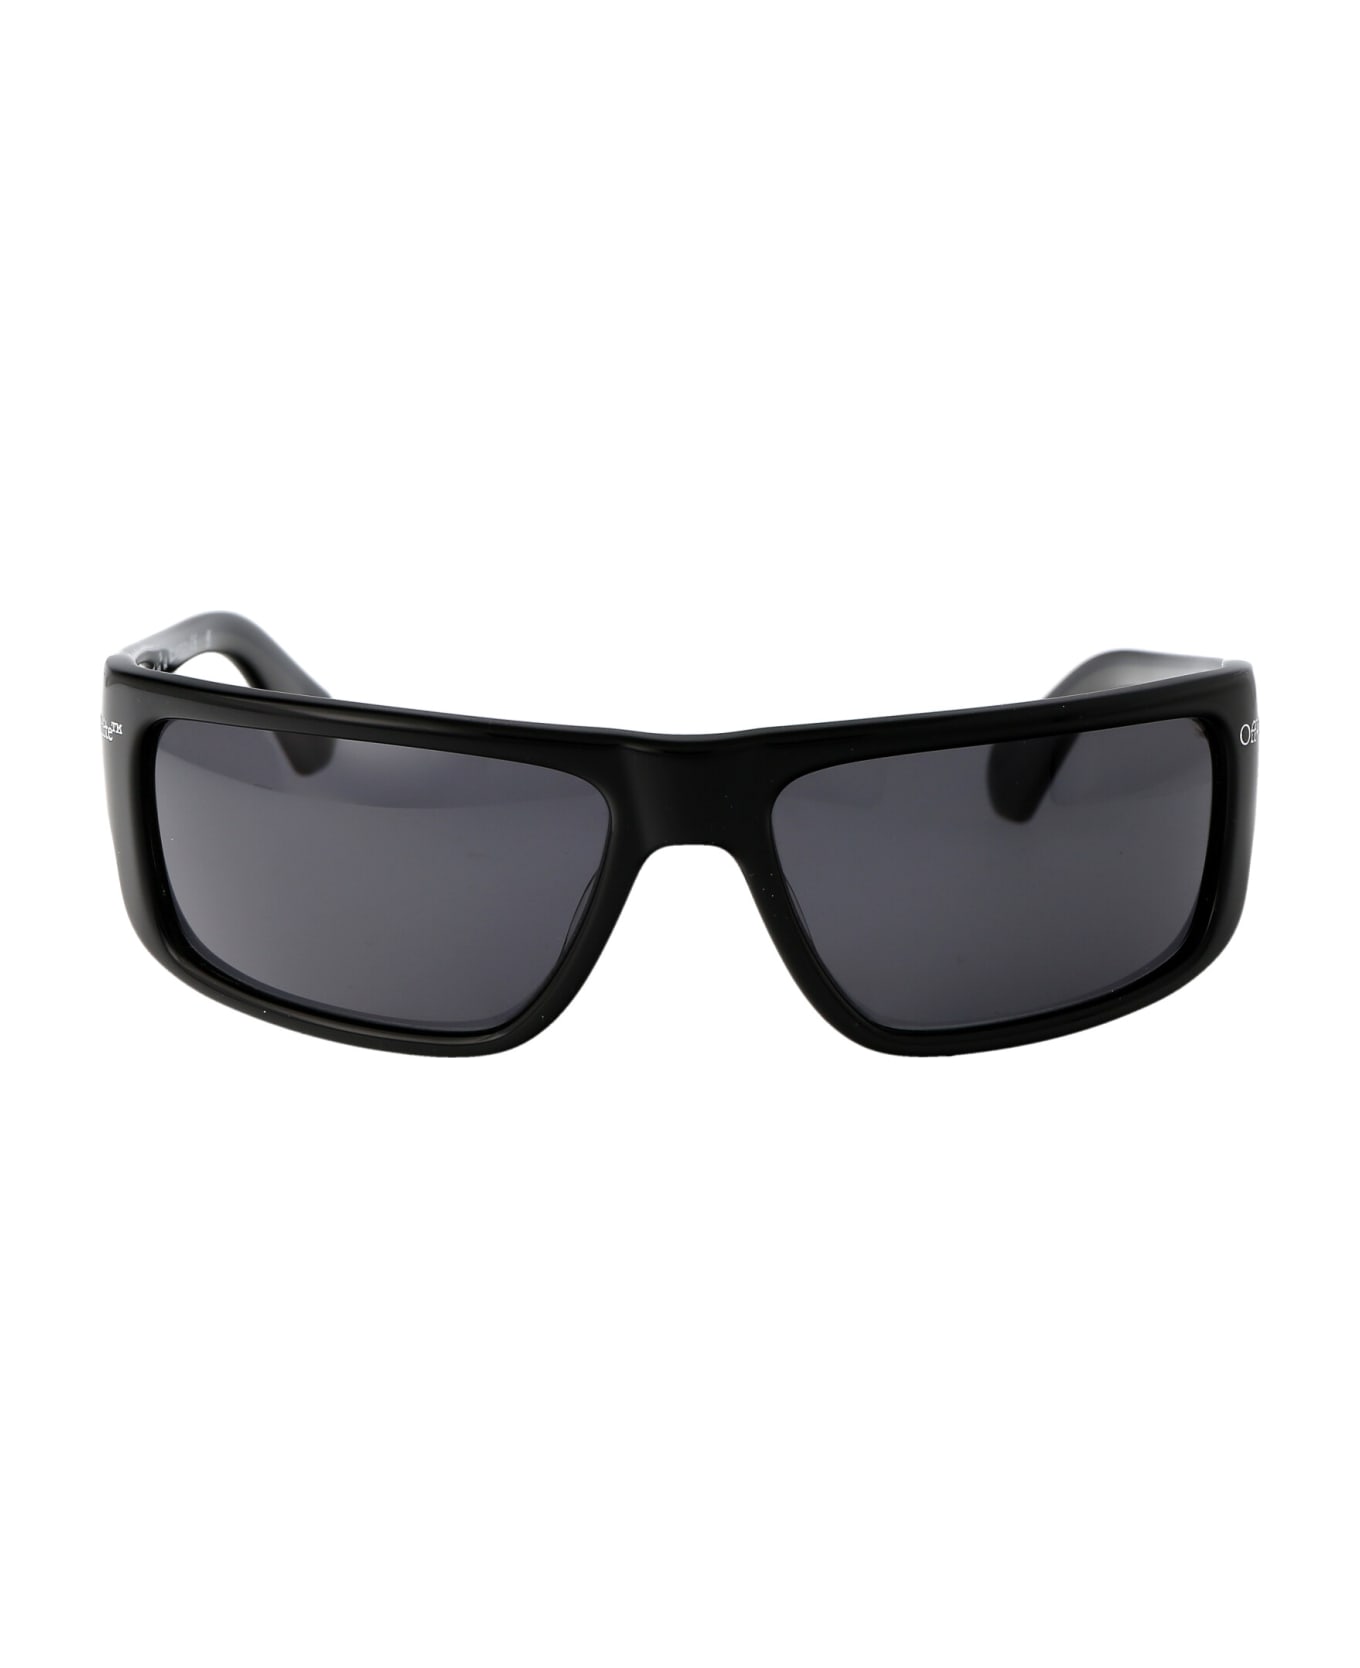 Off-White Bologna Rectangular Frame Sunglasses - 1007 BLACK サングラス